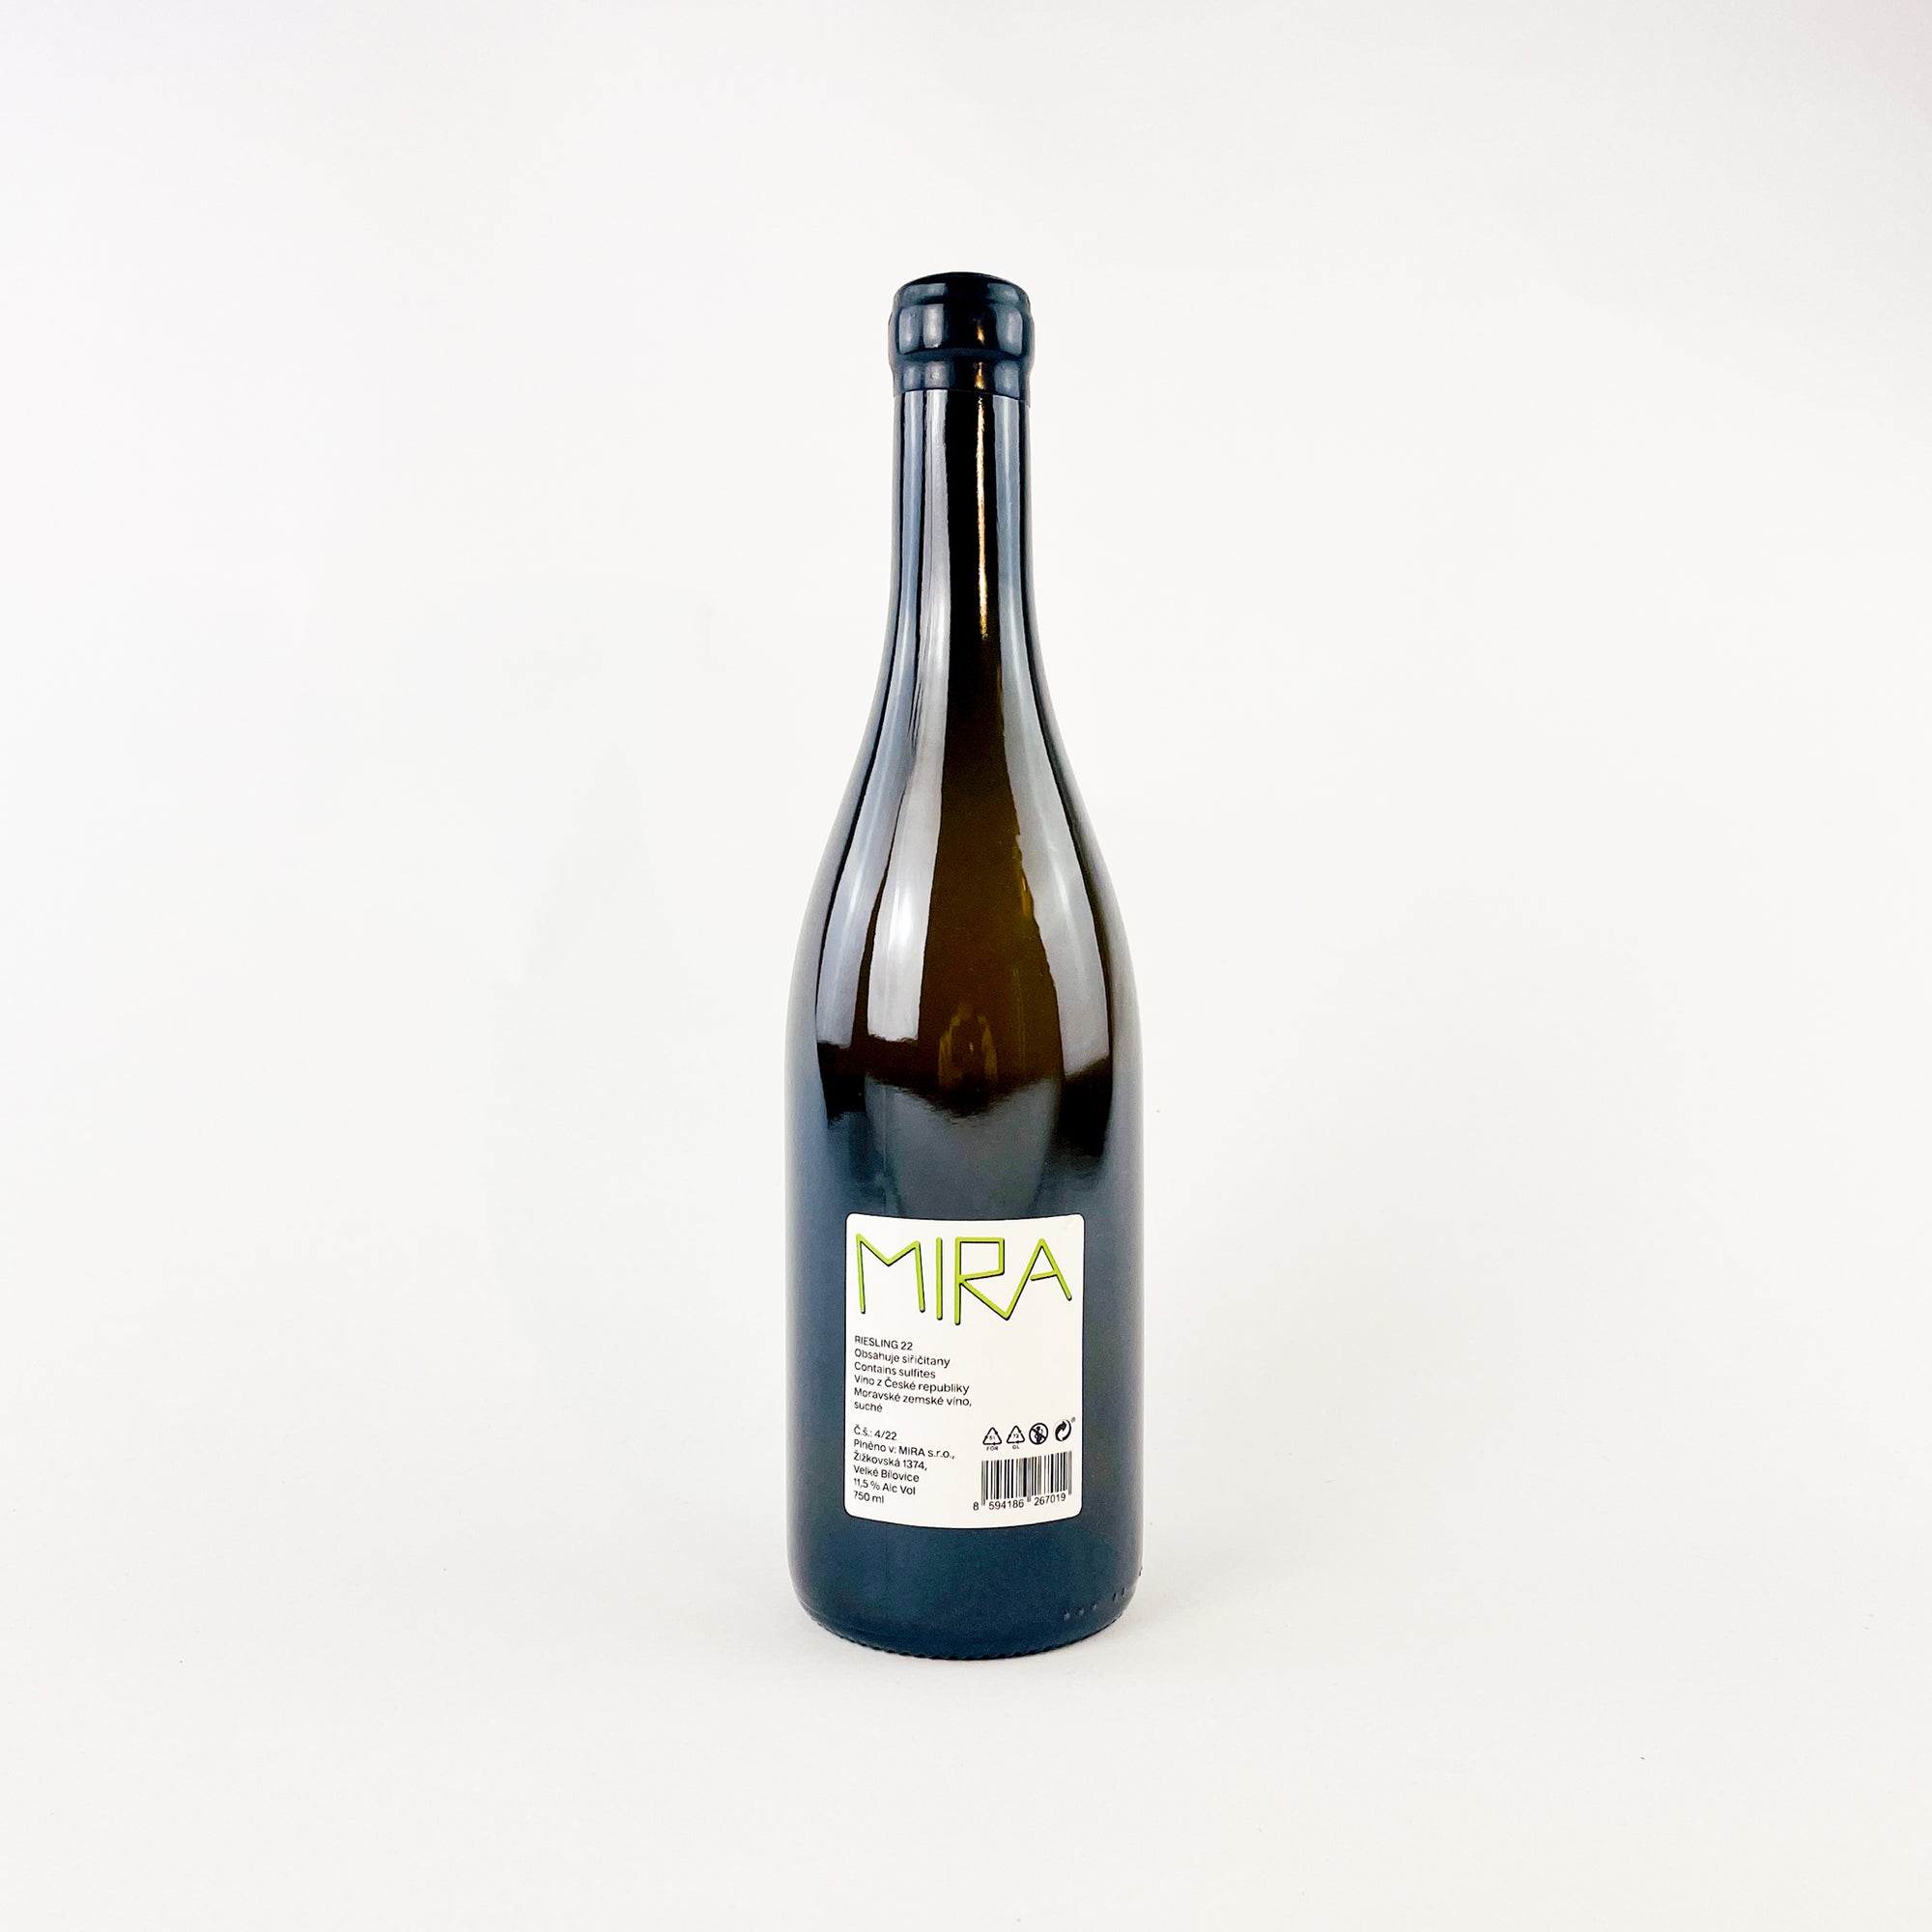 MIRA Nestarec Riesling Natural White Wine Naturwein Weißwein bottle back view